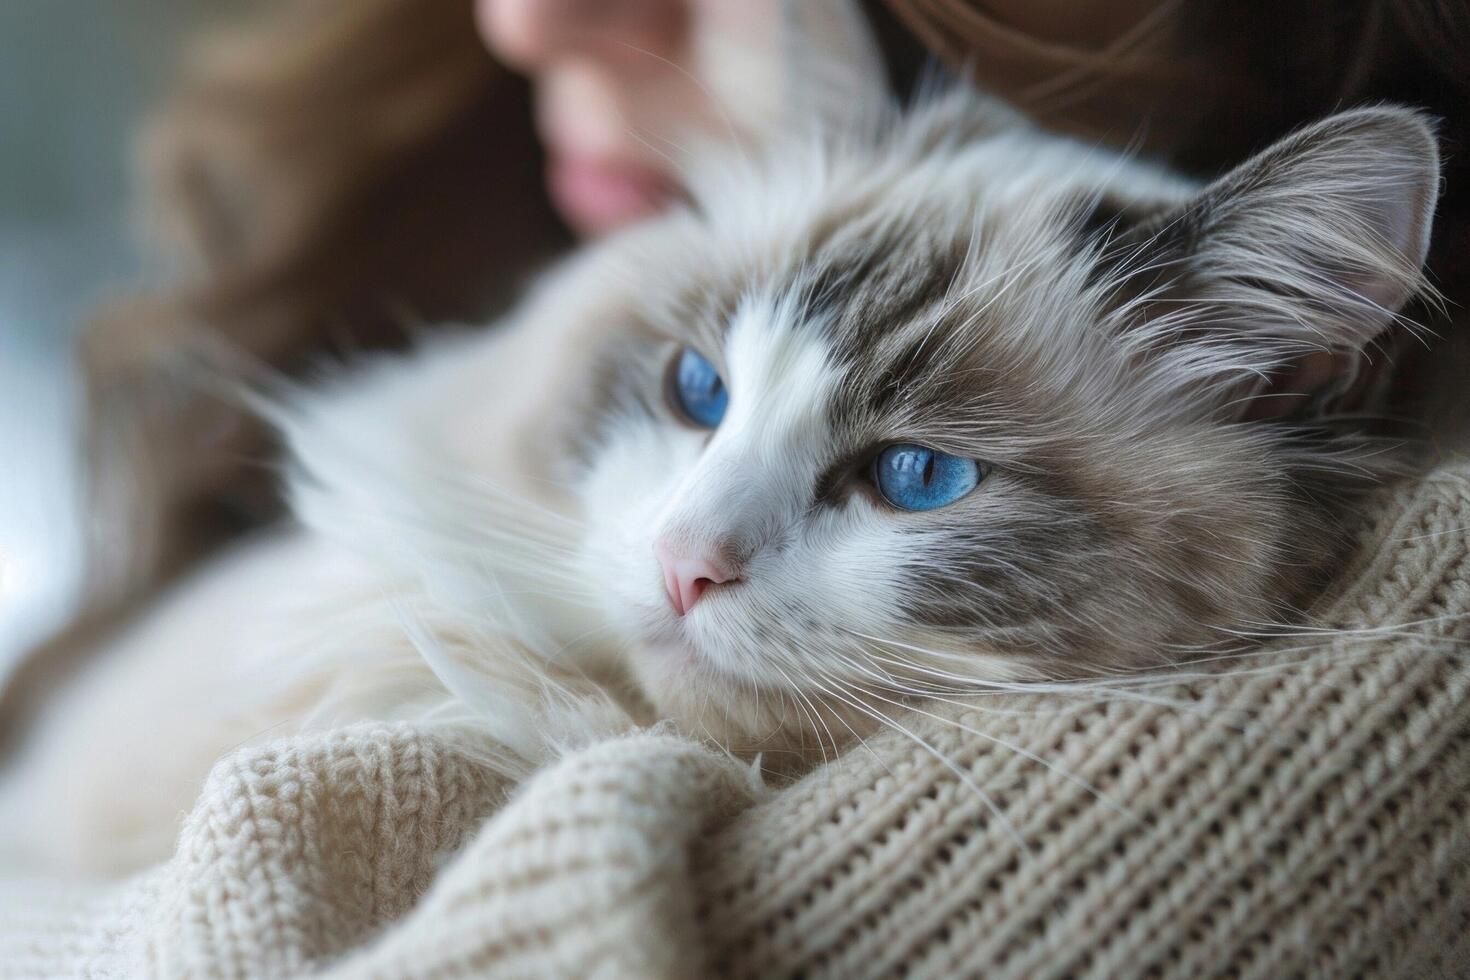 un sereno muñeca de trapo gato descansando en sus del propietario brazos, sus azul ojos mirando cariñosamente a sus humano compañero foto